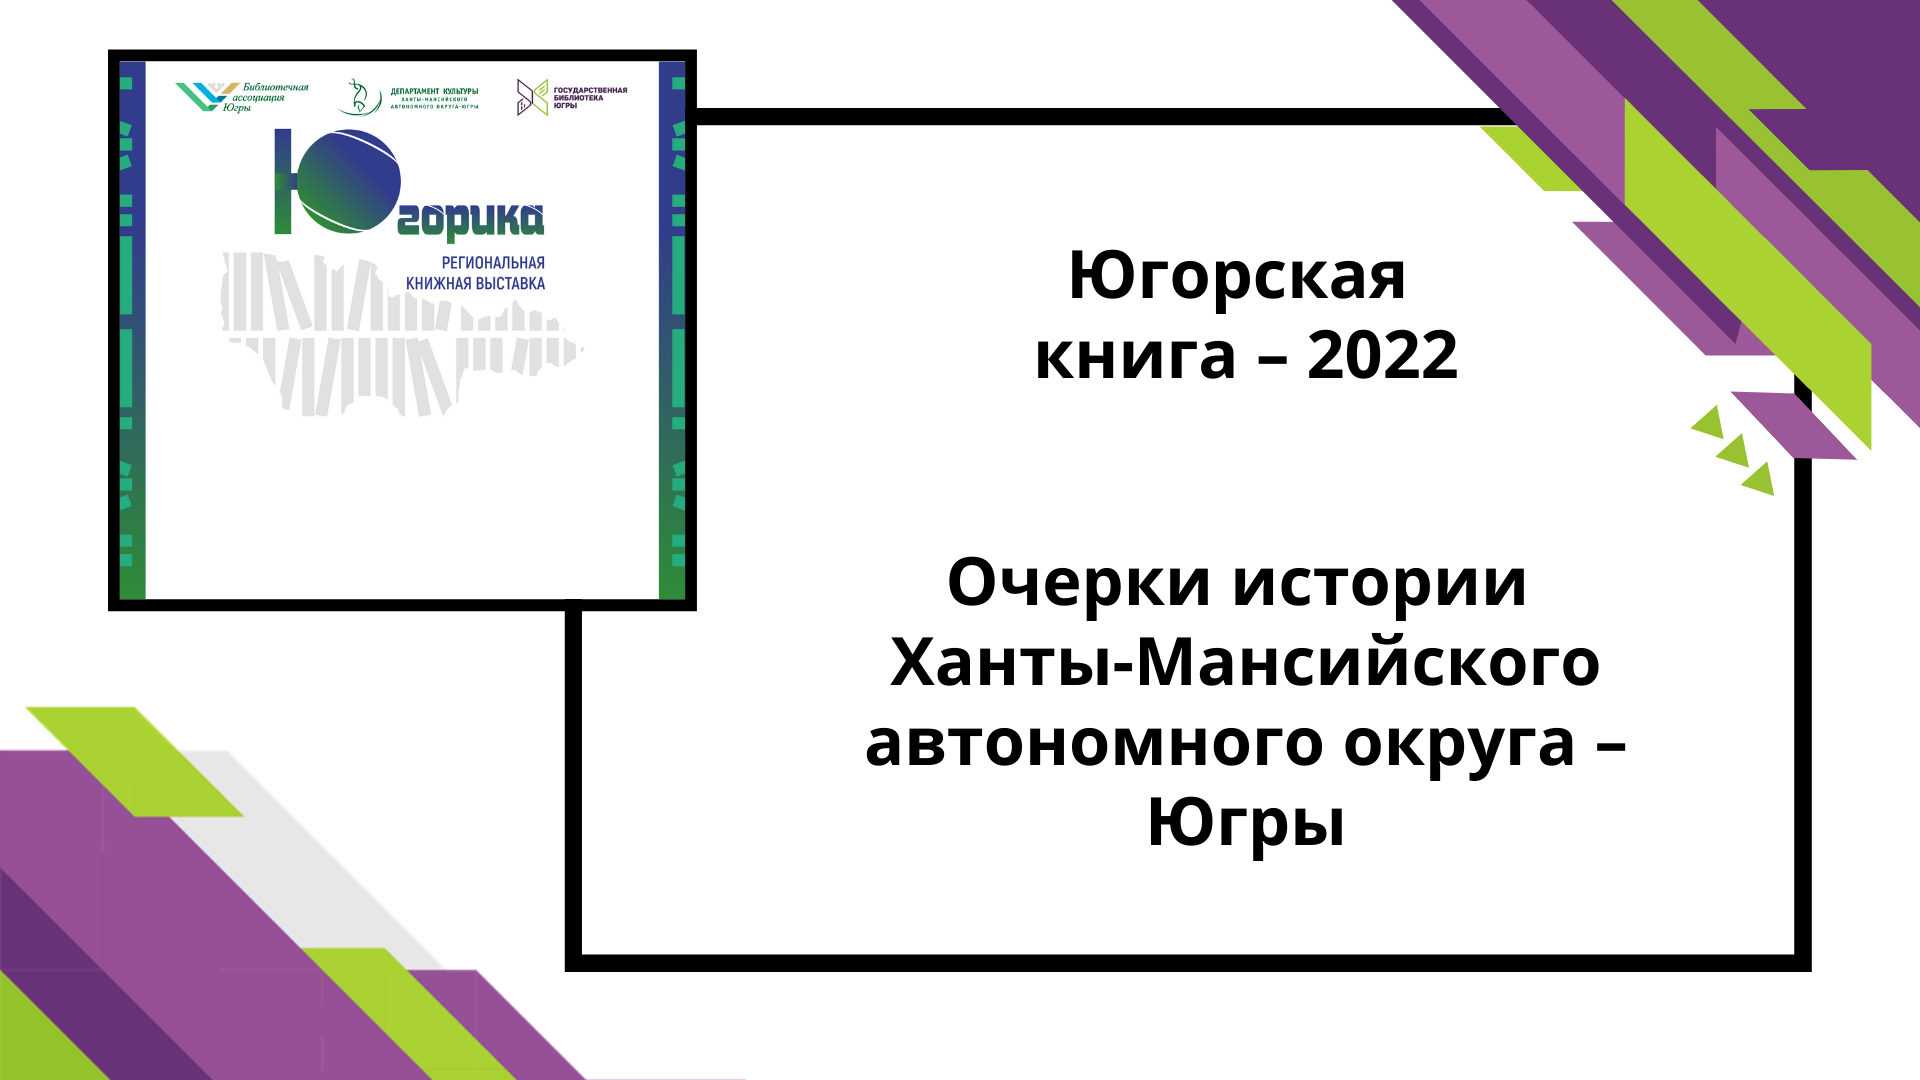 Югорская книга-2022 Очерки истории Югры